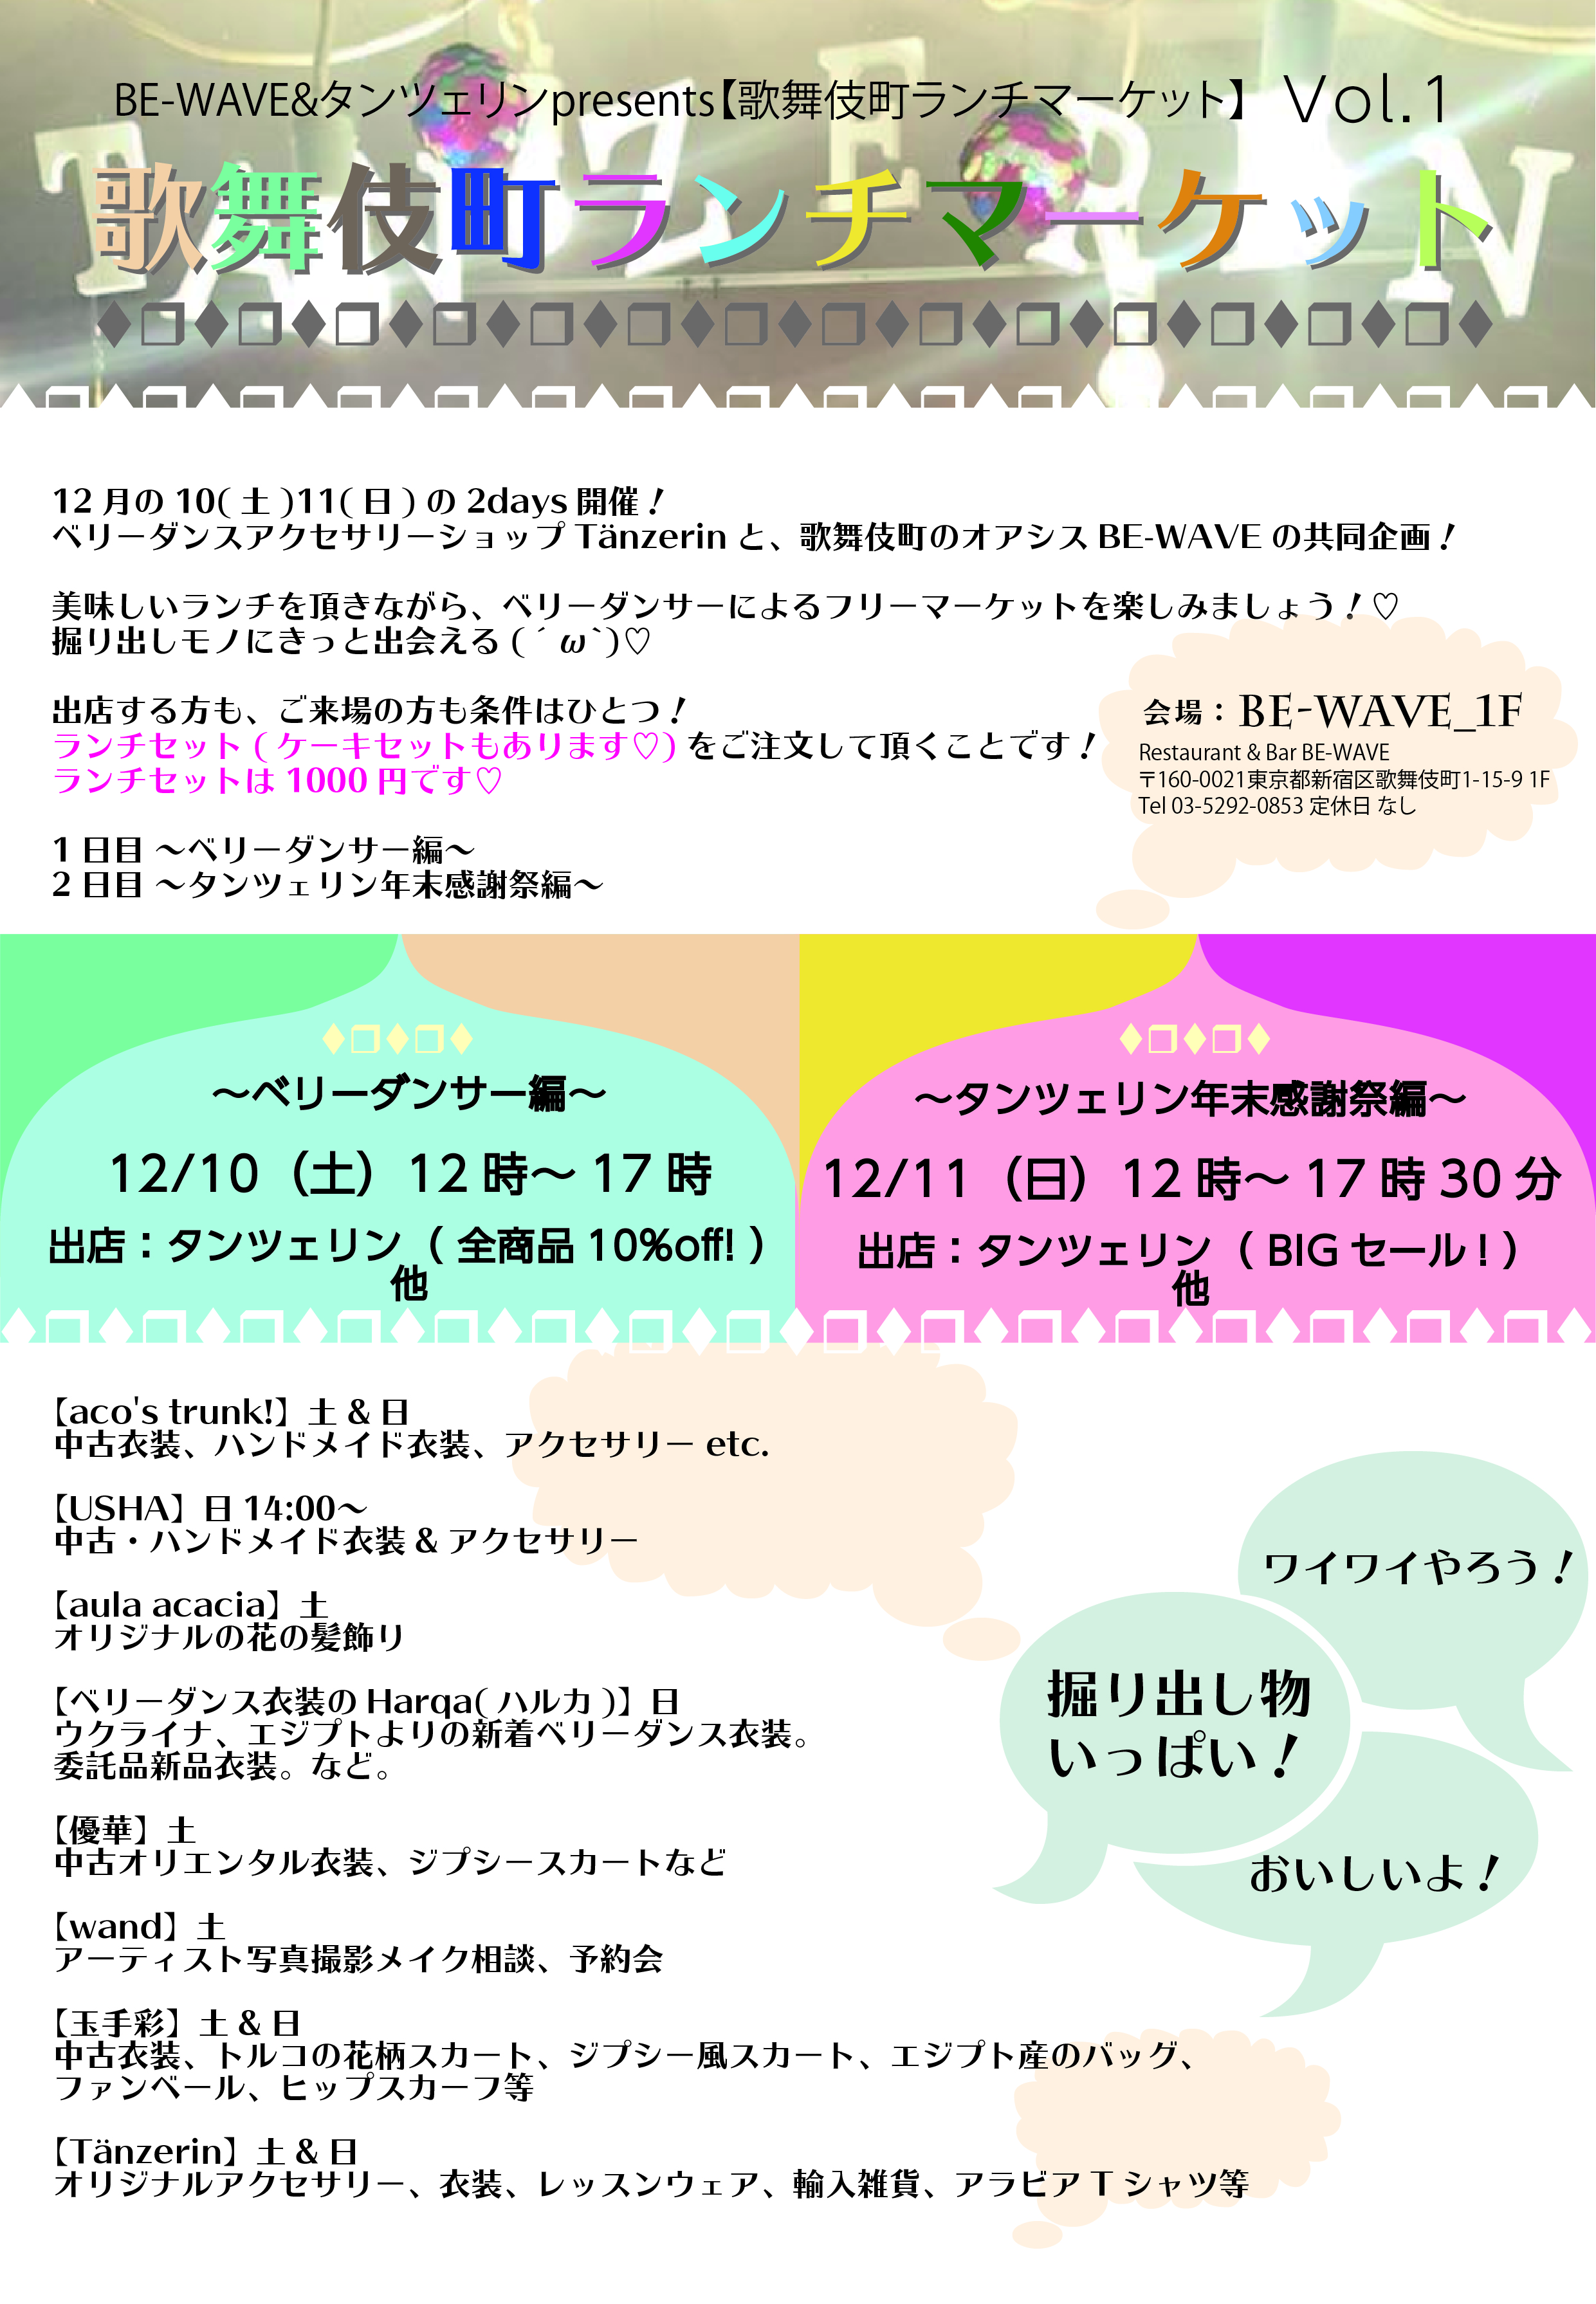 12/10,11「歌舞伎町ランチマーケットVol.1」出店のお知らせ